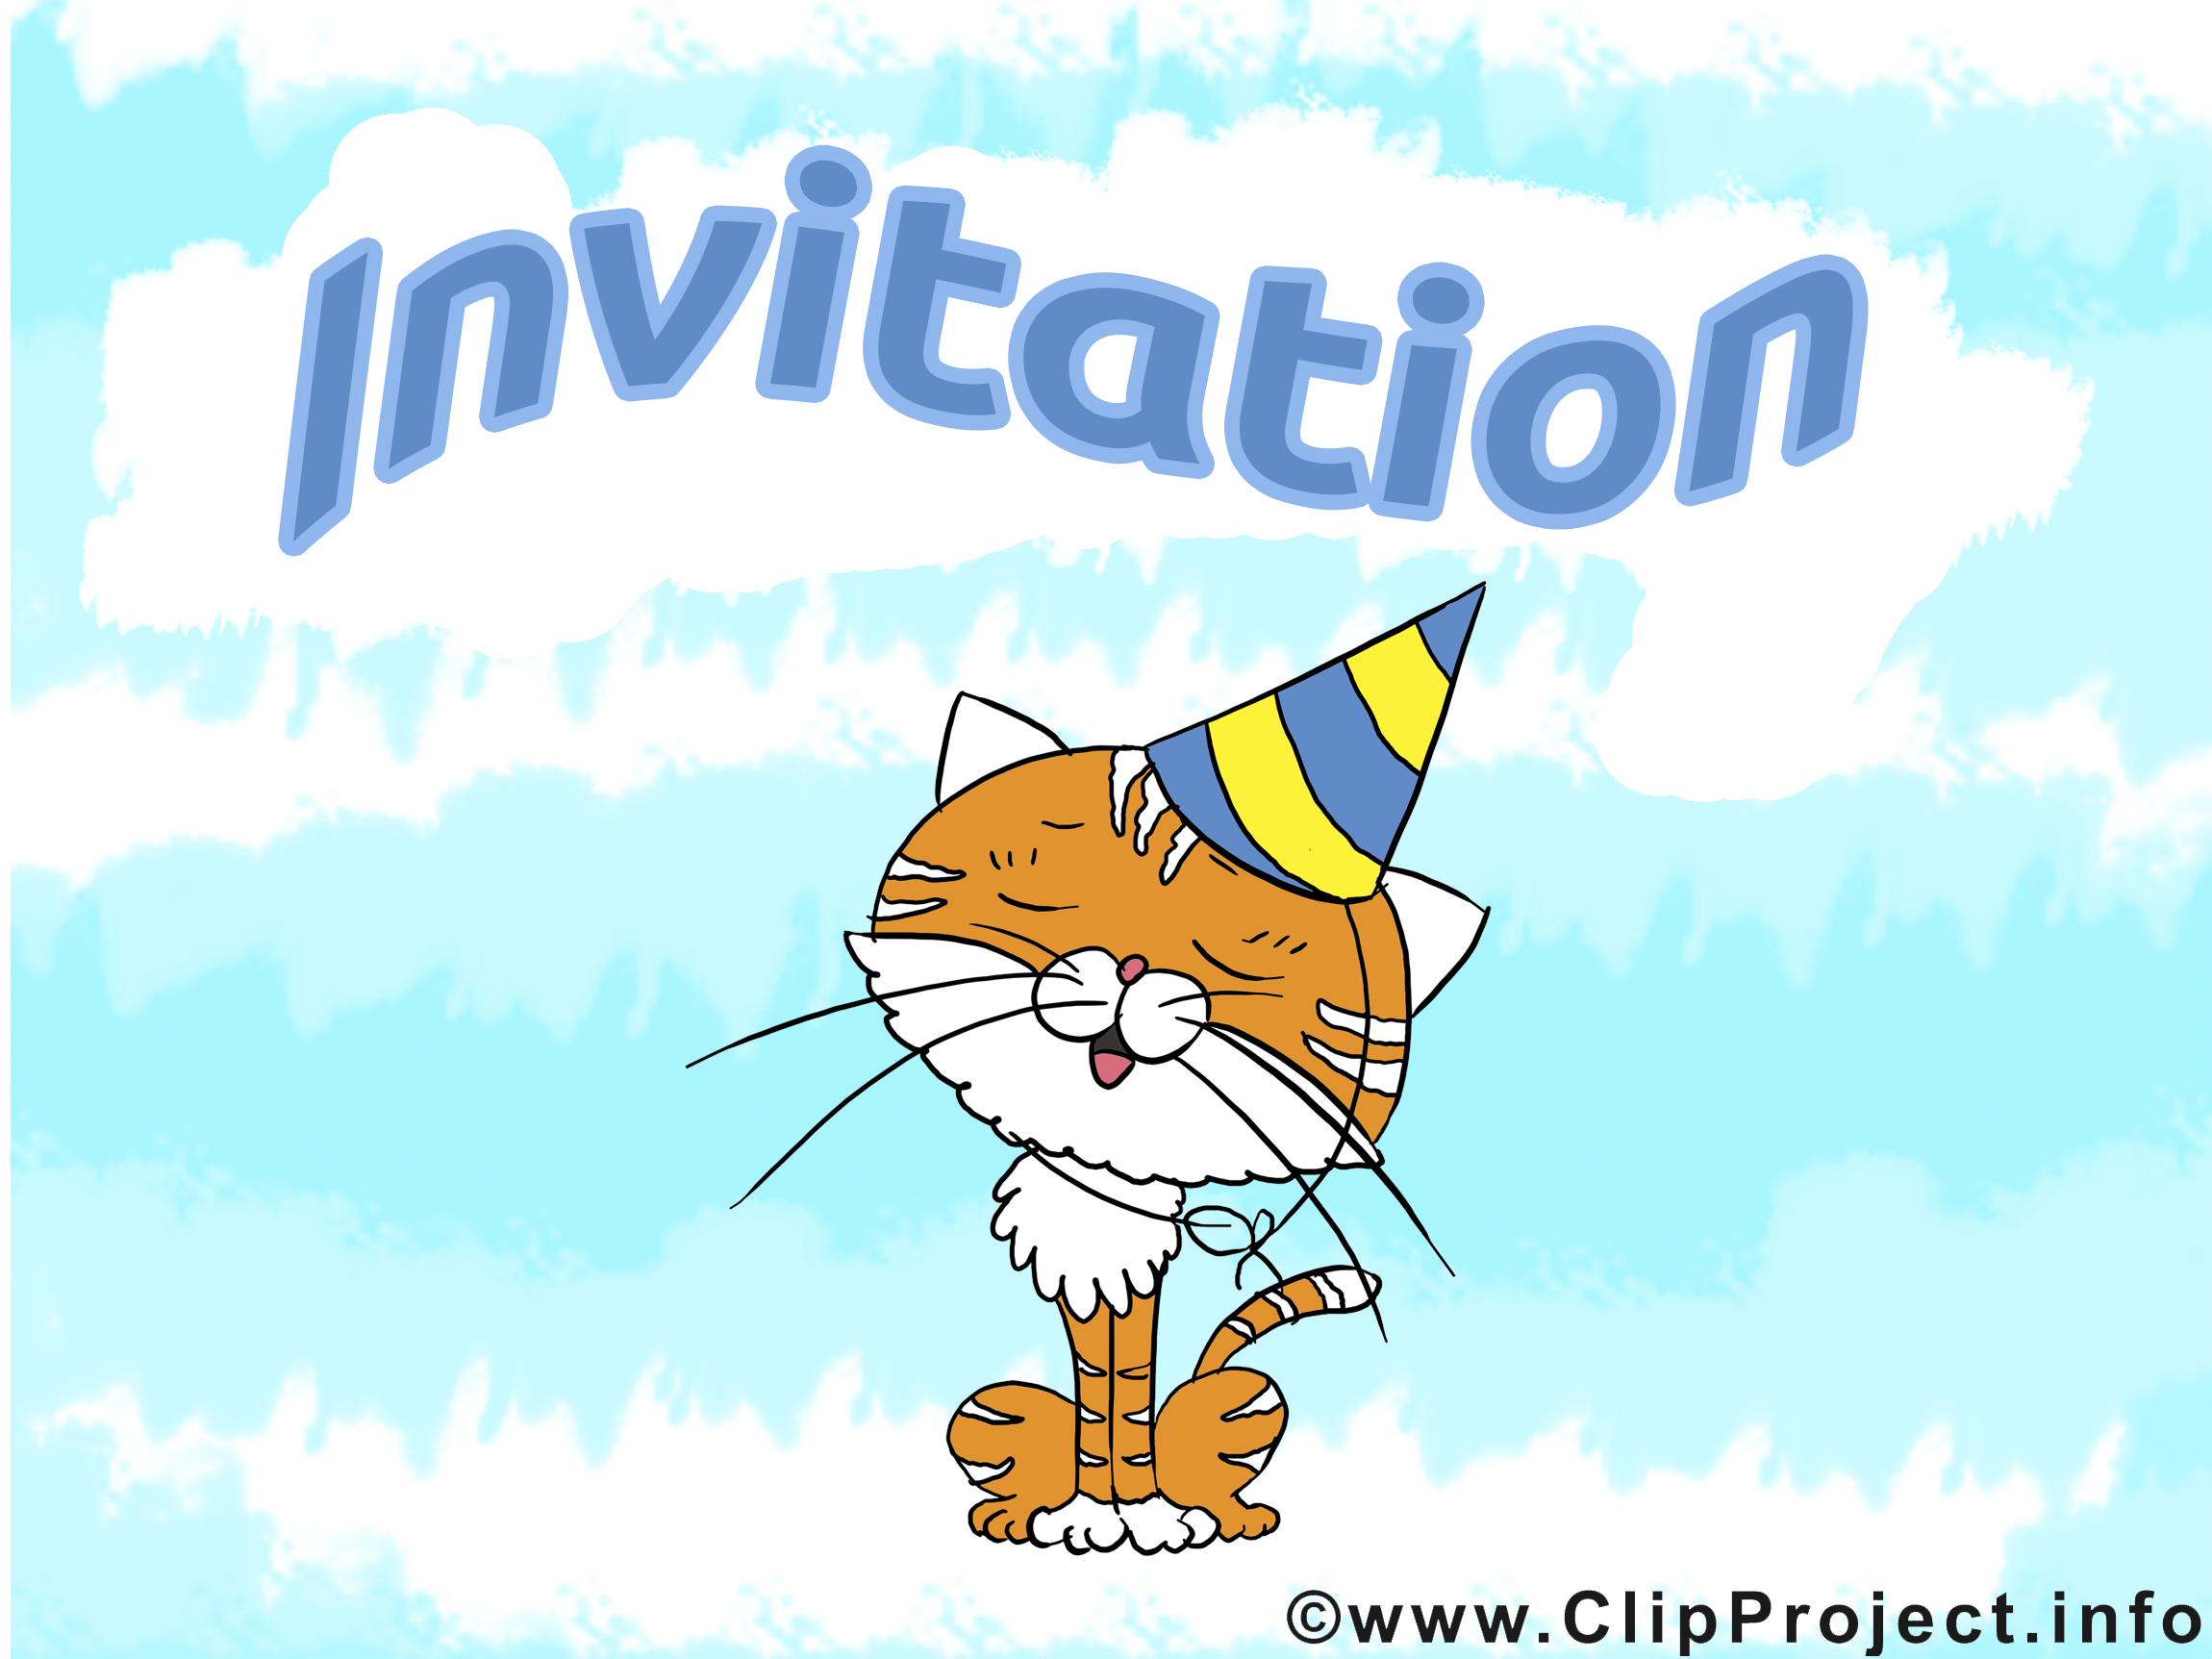 clipart invitation gratuit - photo #4